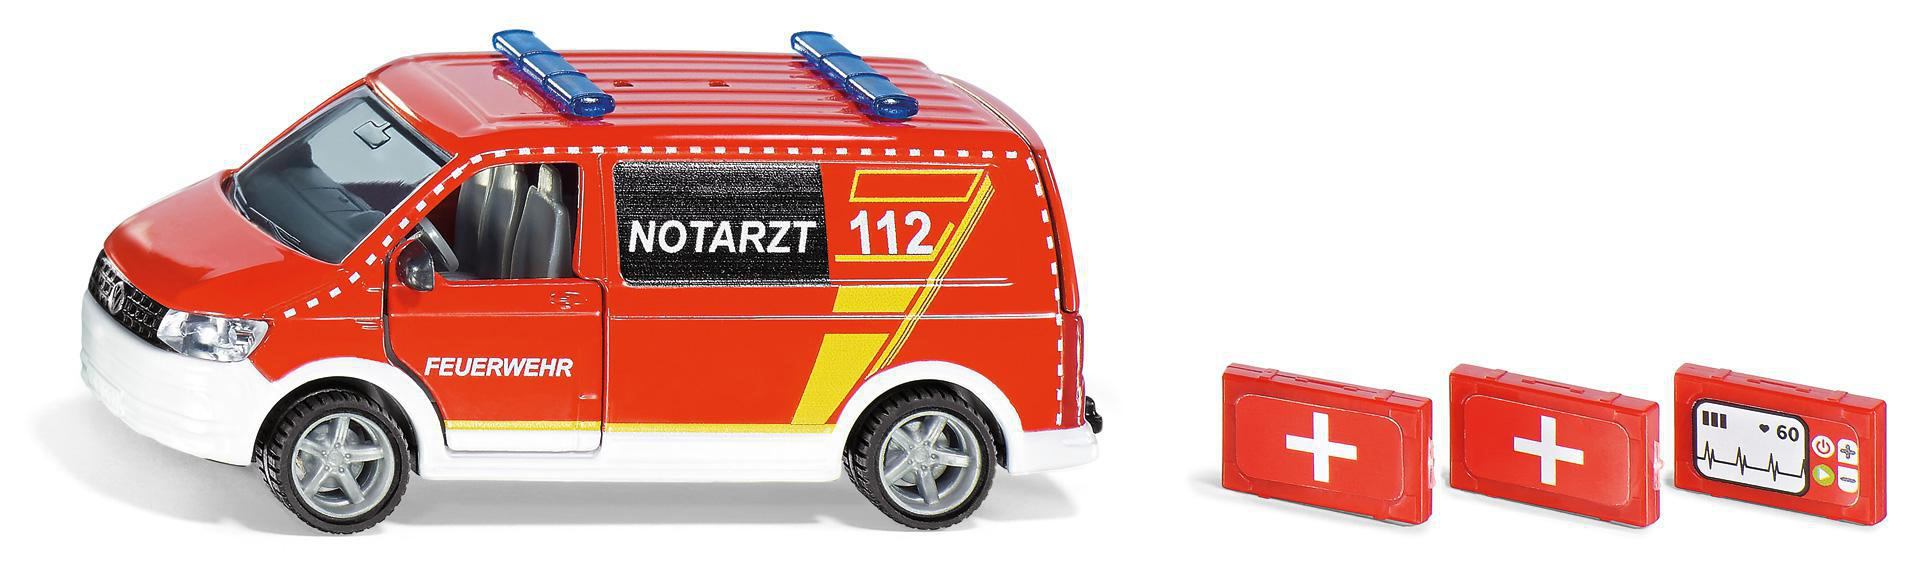 SIKU 2116 VW Mehrfarbig Spielzeugmodellfahrzeug, Notarztwagen T6